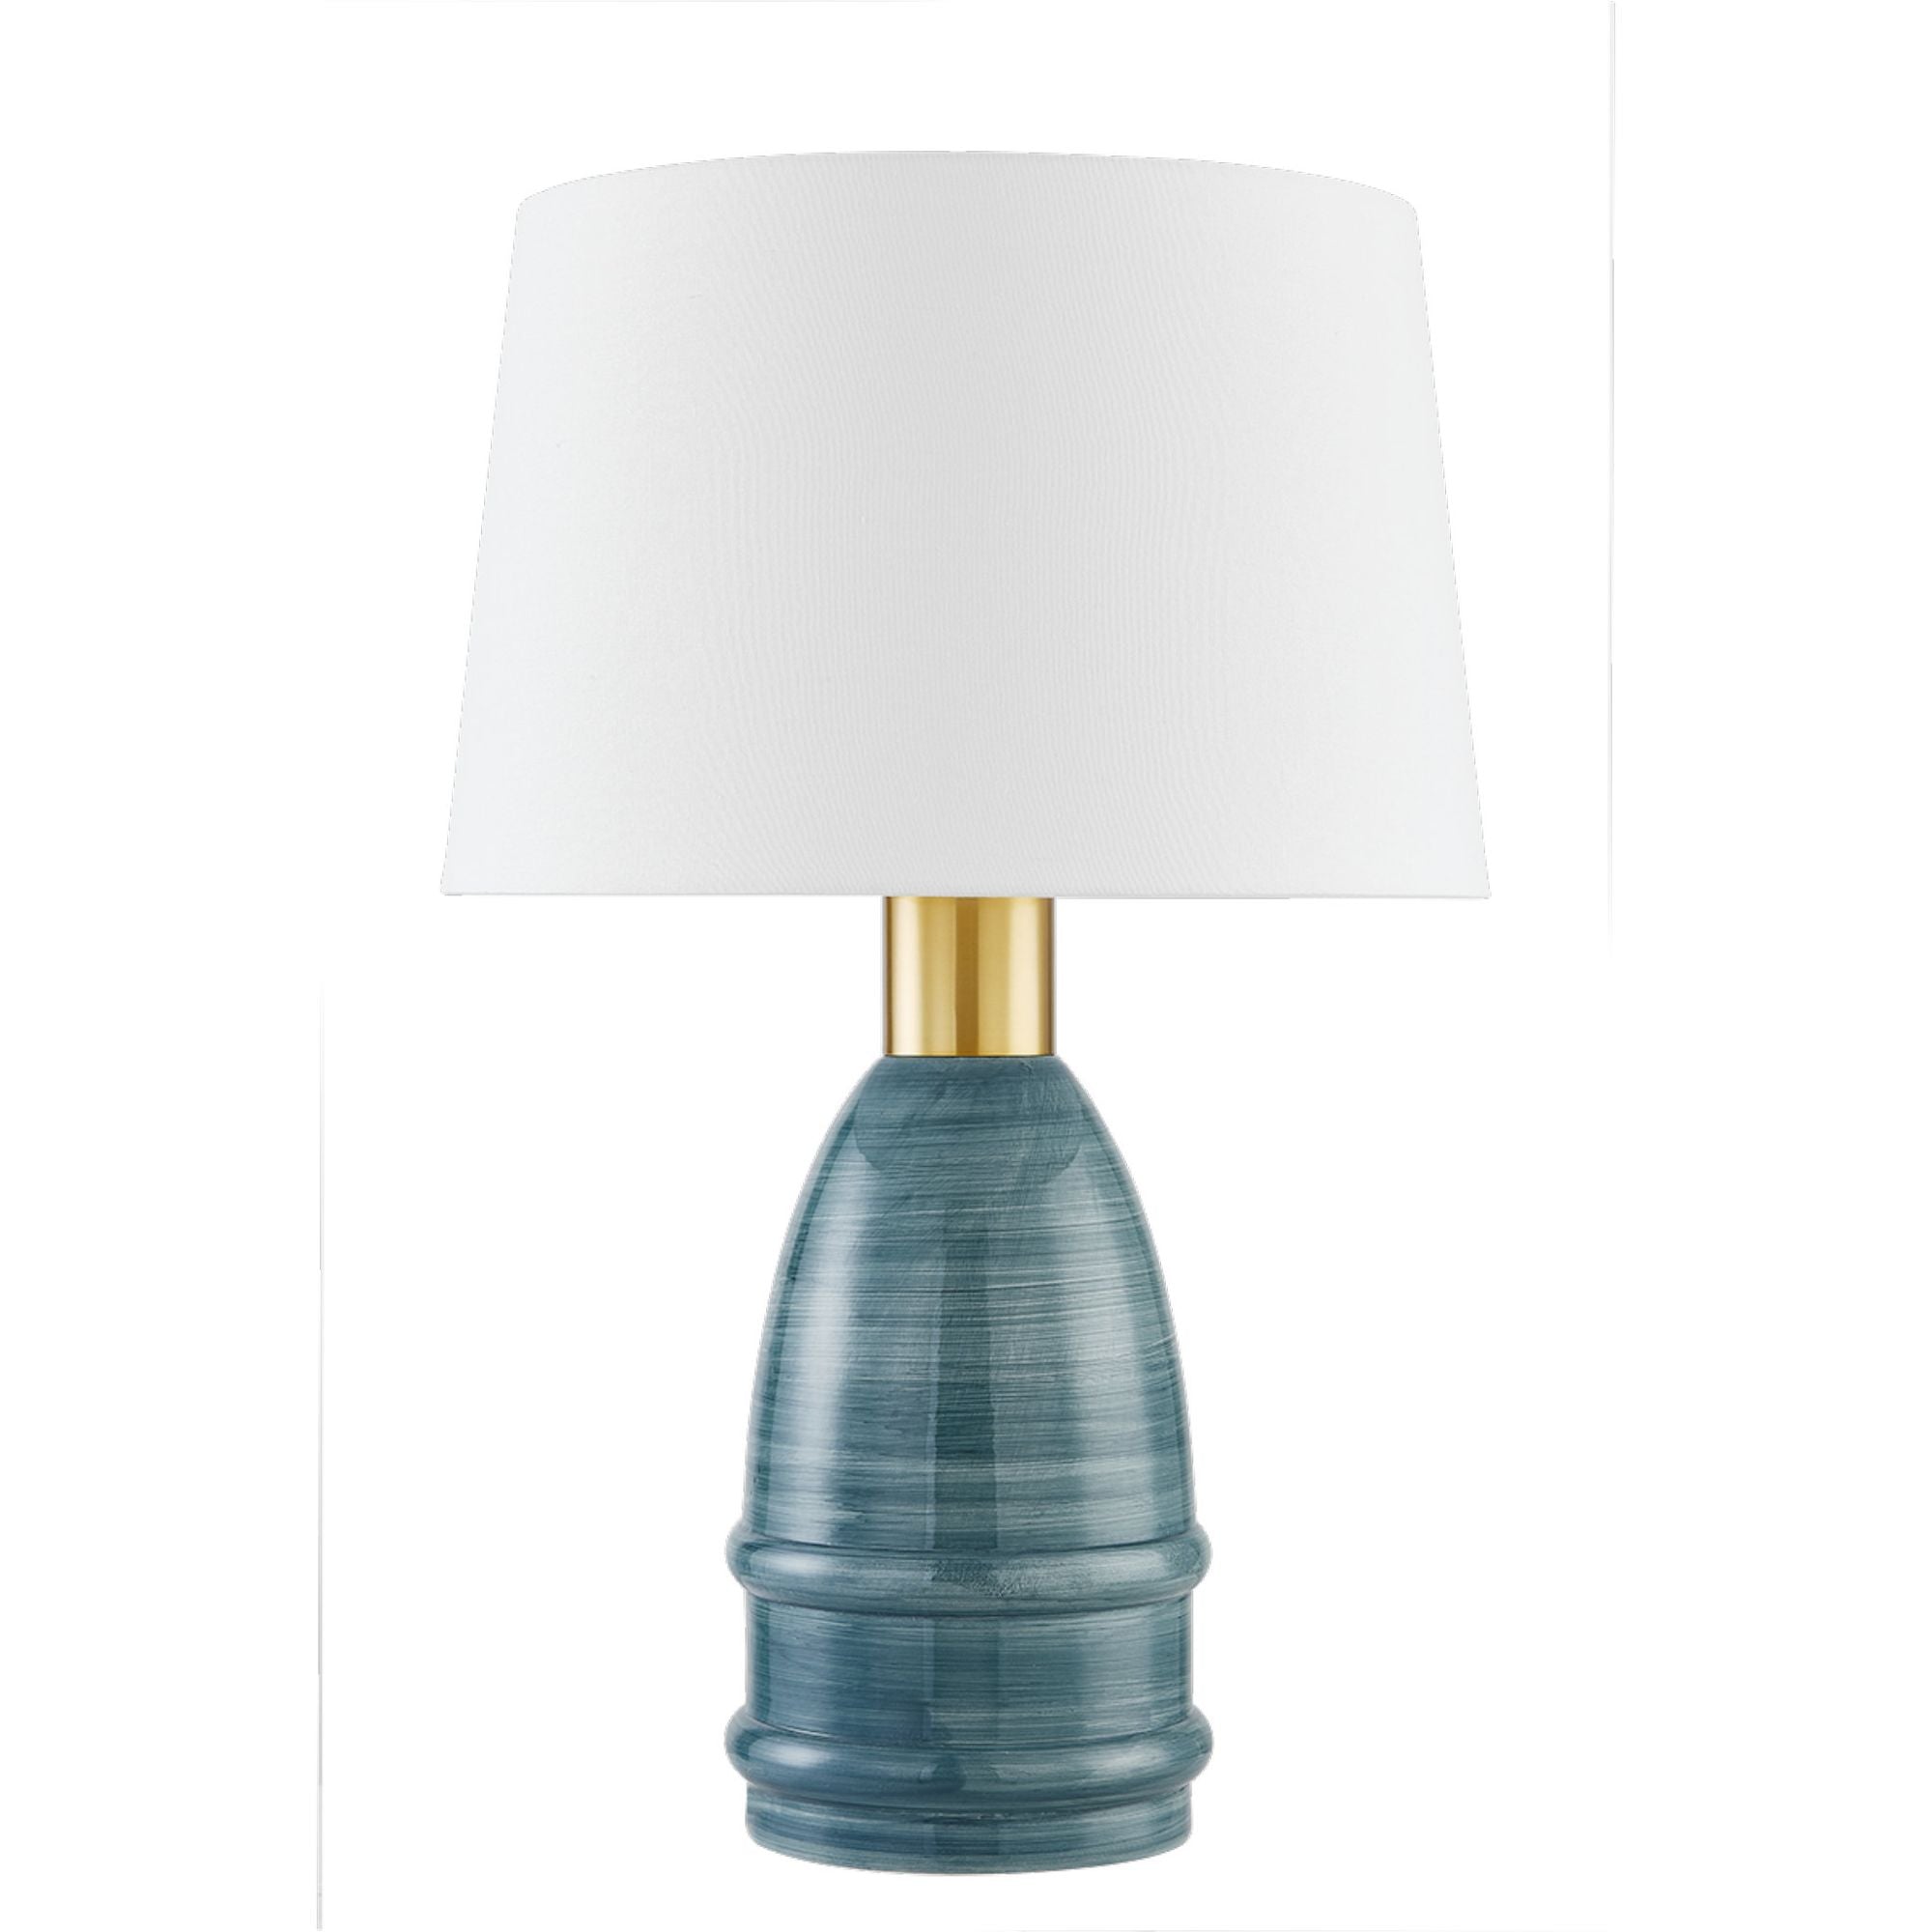 Tenley 1-Light Table Lamp in Aged Brass/Ceramic Inchyra Blue by Zoe Feldman